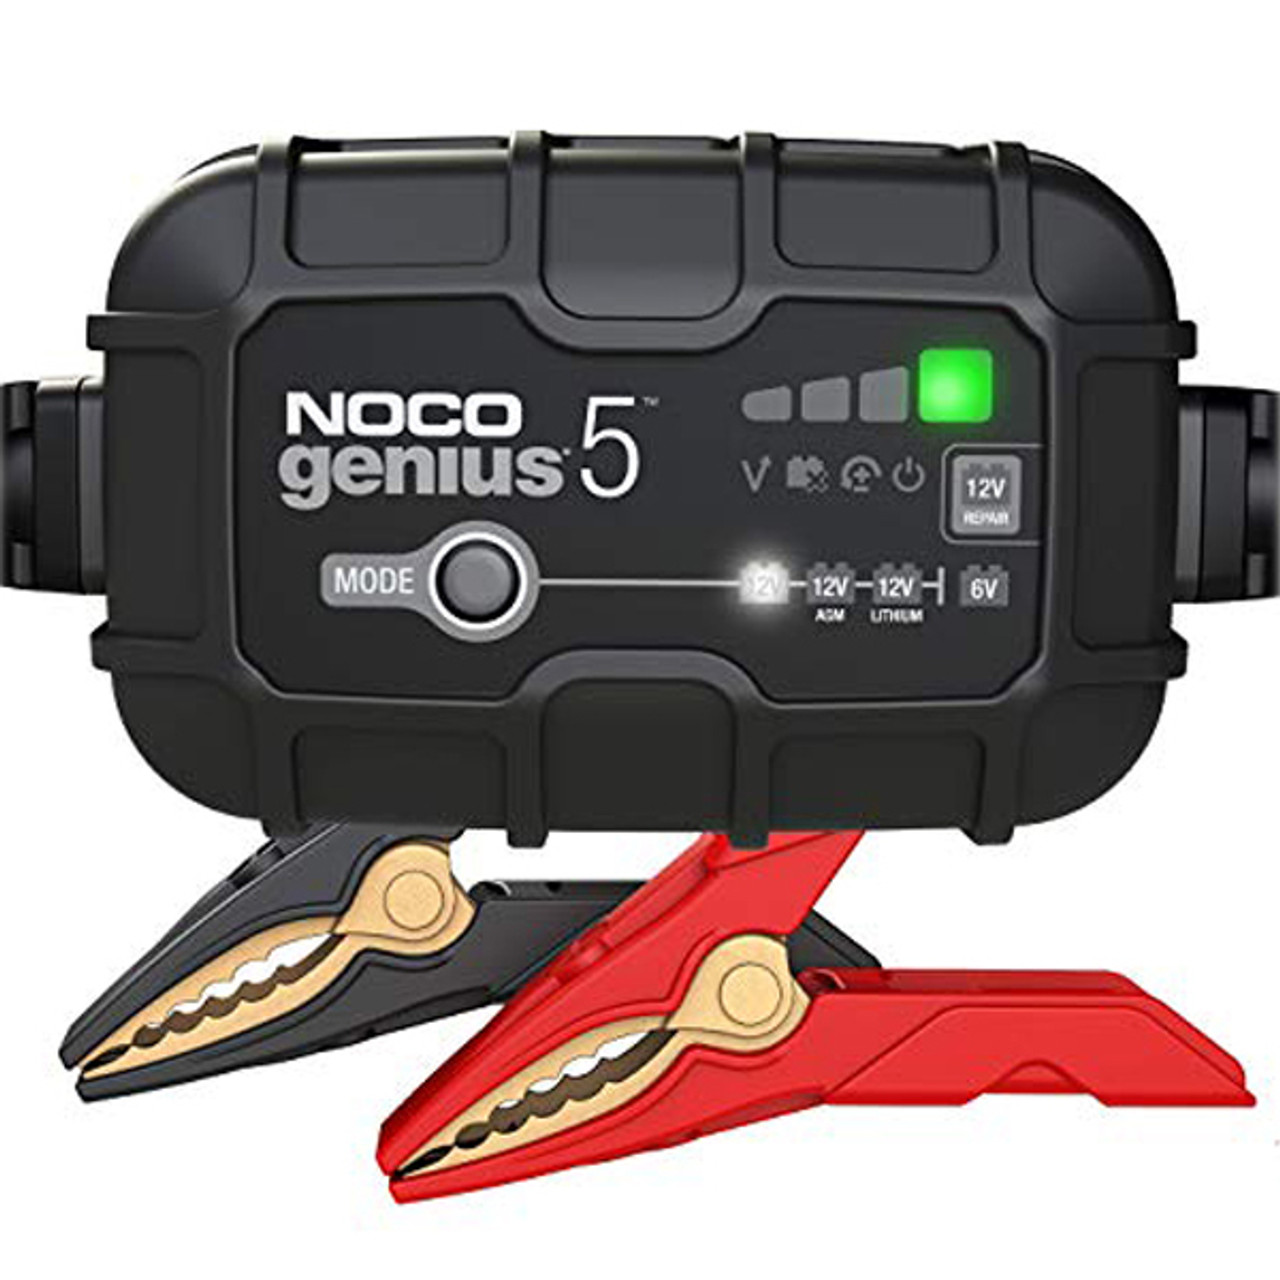 NOCO Genius 5 - 6v &12v 5 amp Battery Charger